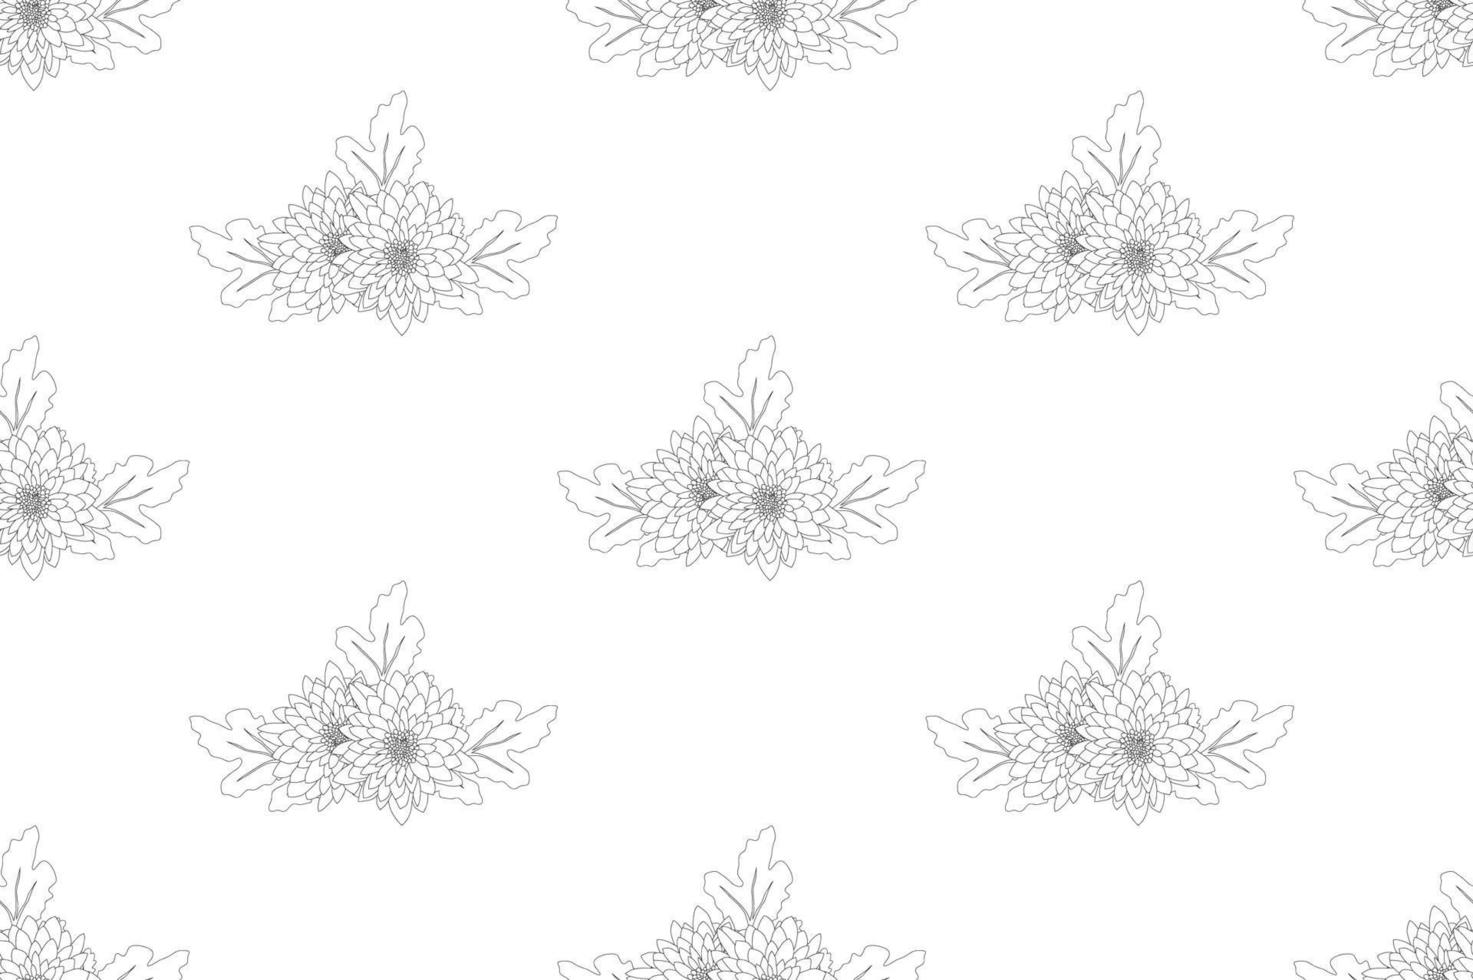 chrysant bloem naadloos op witte achtergrond vector